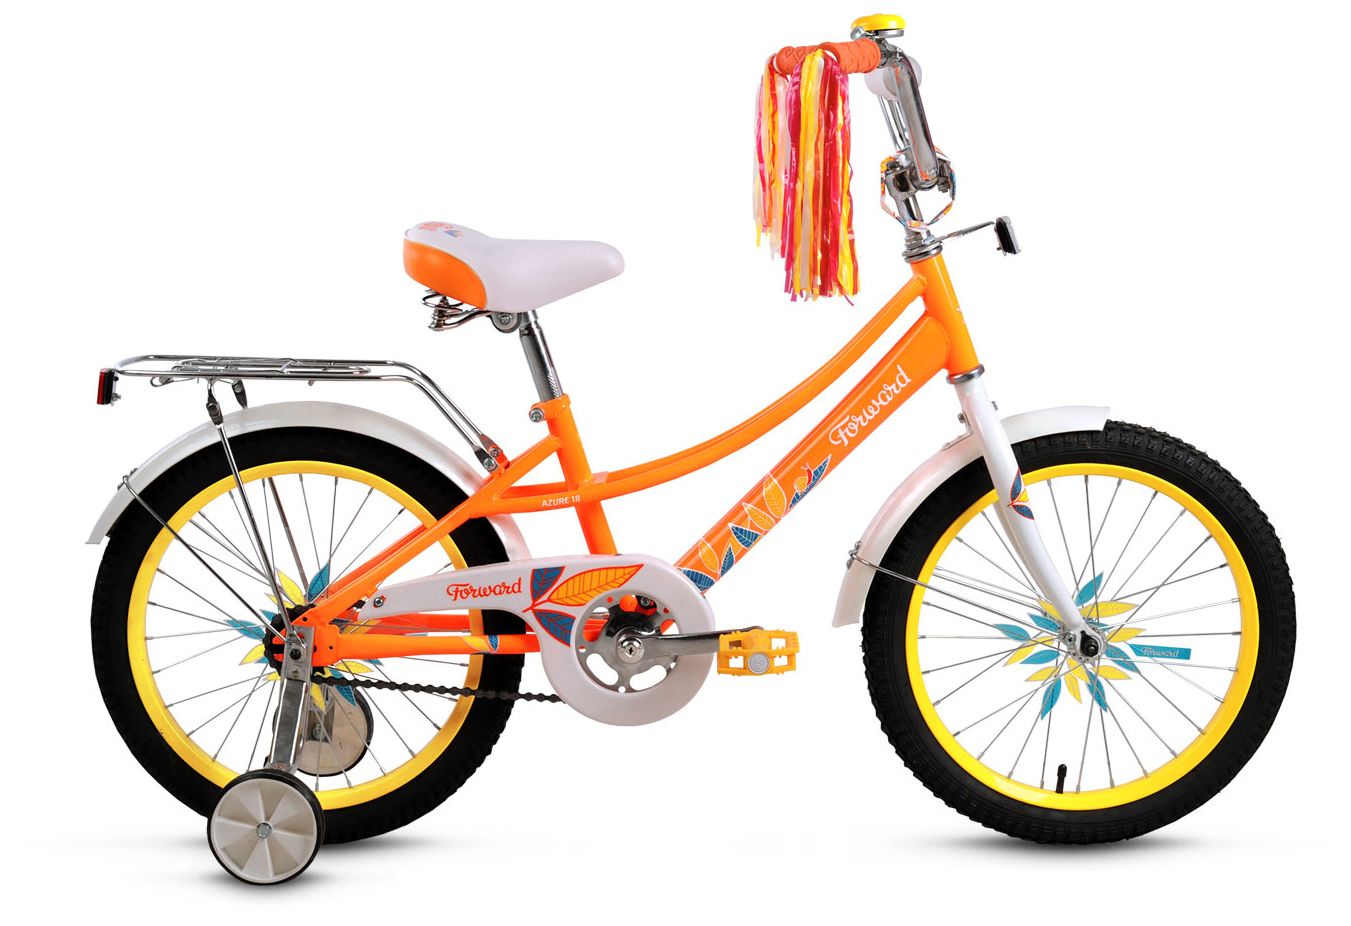  Отзывы о Трехколесный детский велосипед Forward Azure 18 2019